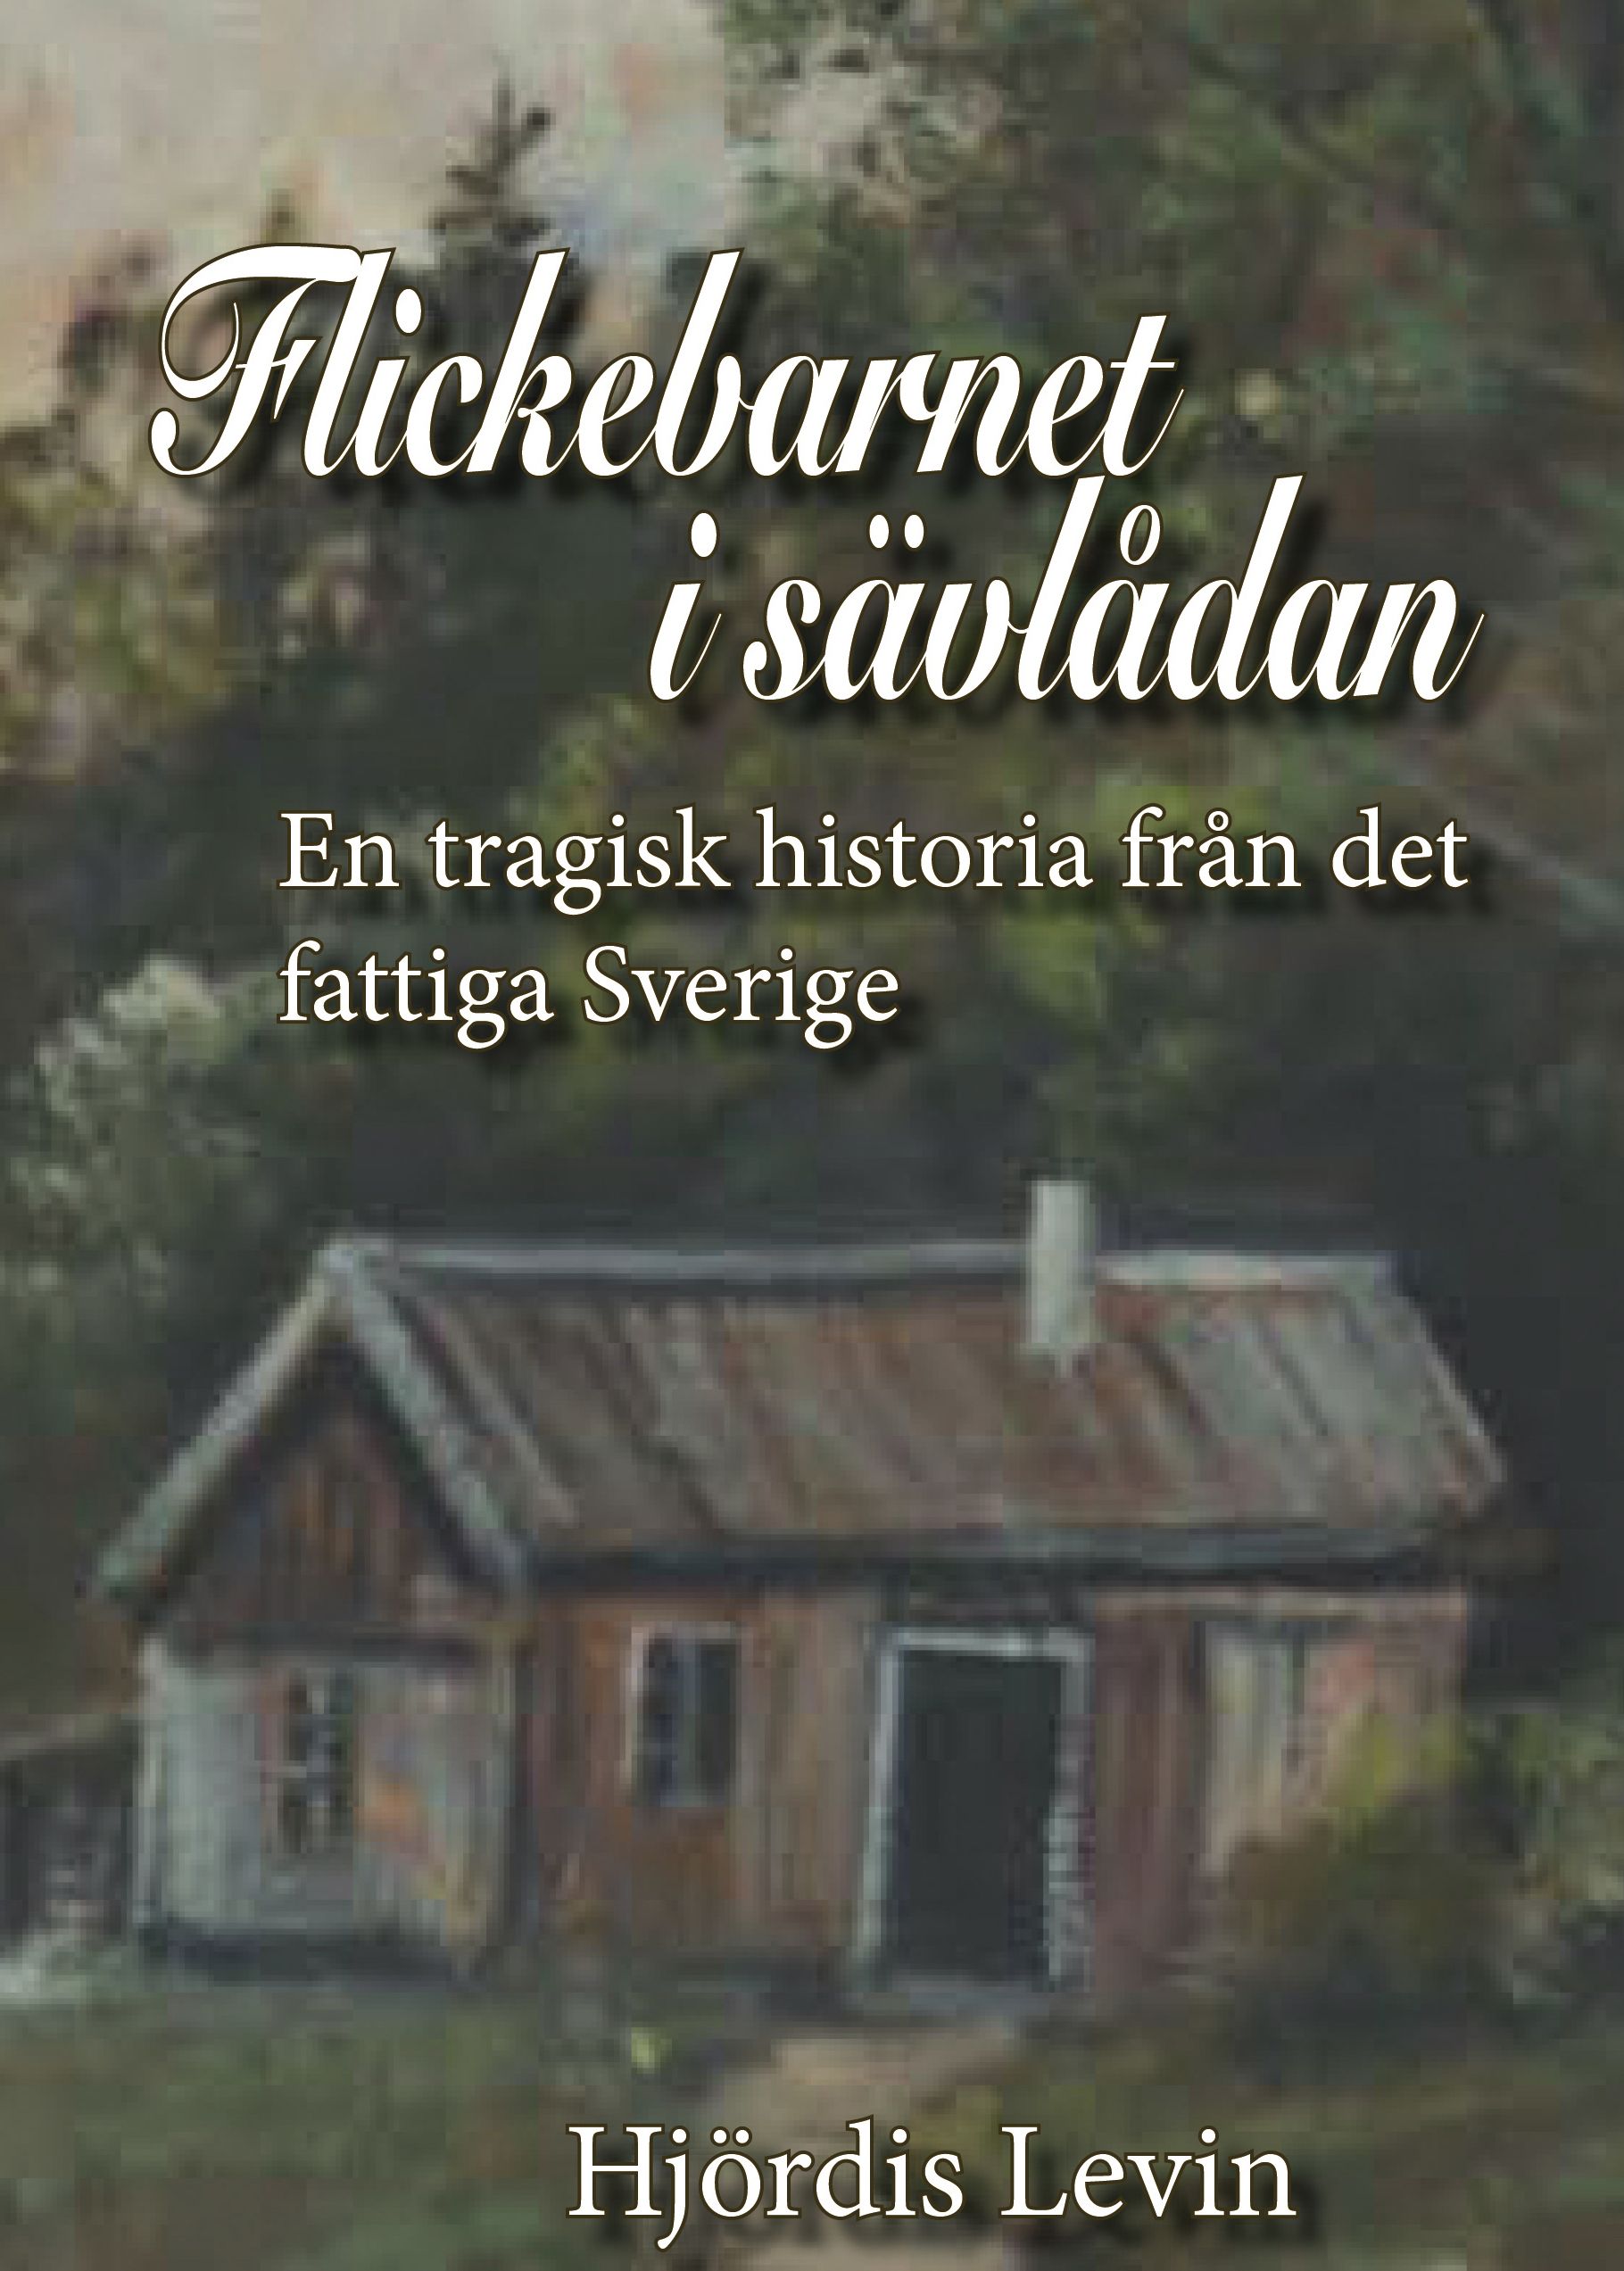 Flickebarnet i sävlådan - en tragisk historia från det fattiga Sverige, e-bog af Hjördis Levin